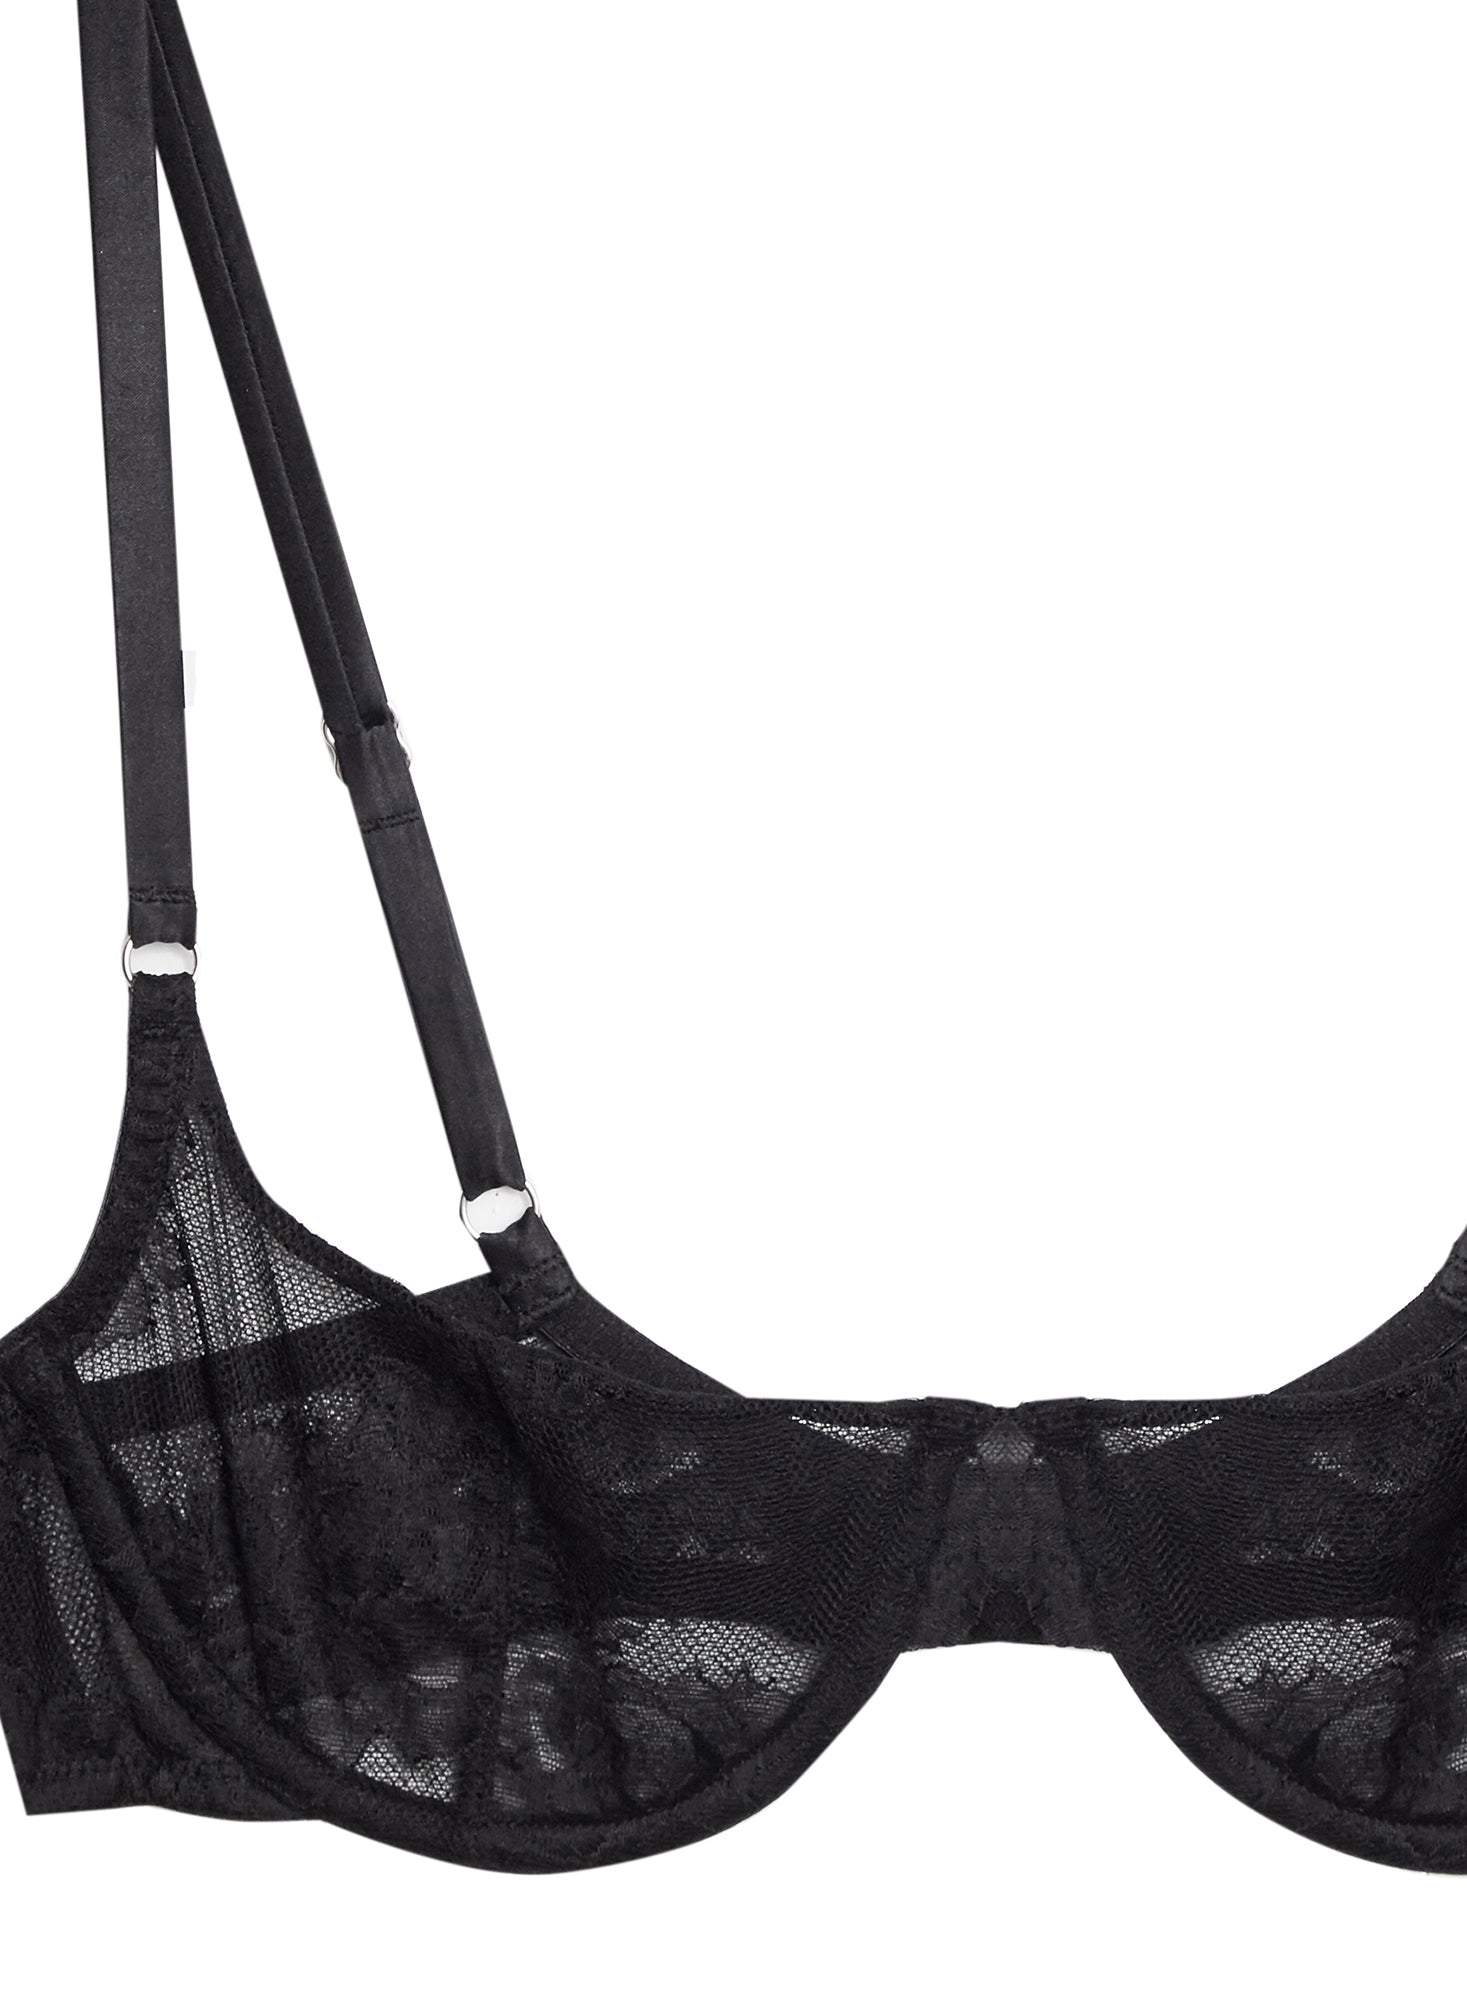 MELENECA Balconette Underwire Sexy Lace Bra for Women Black 38E